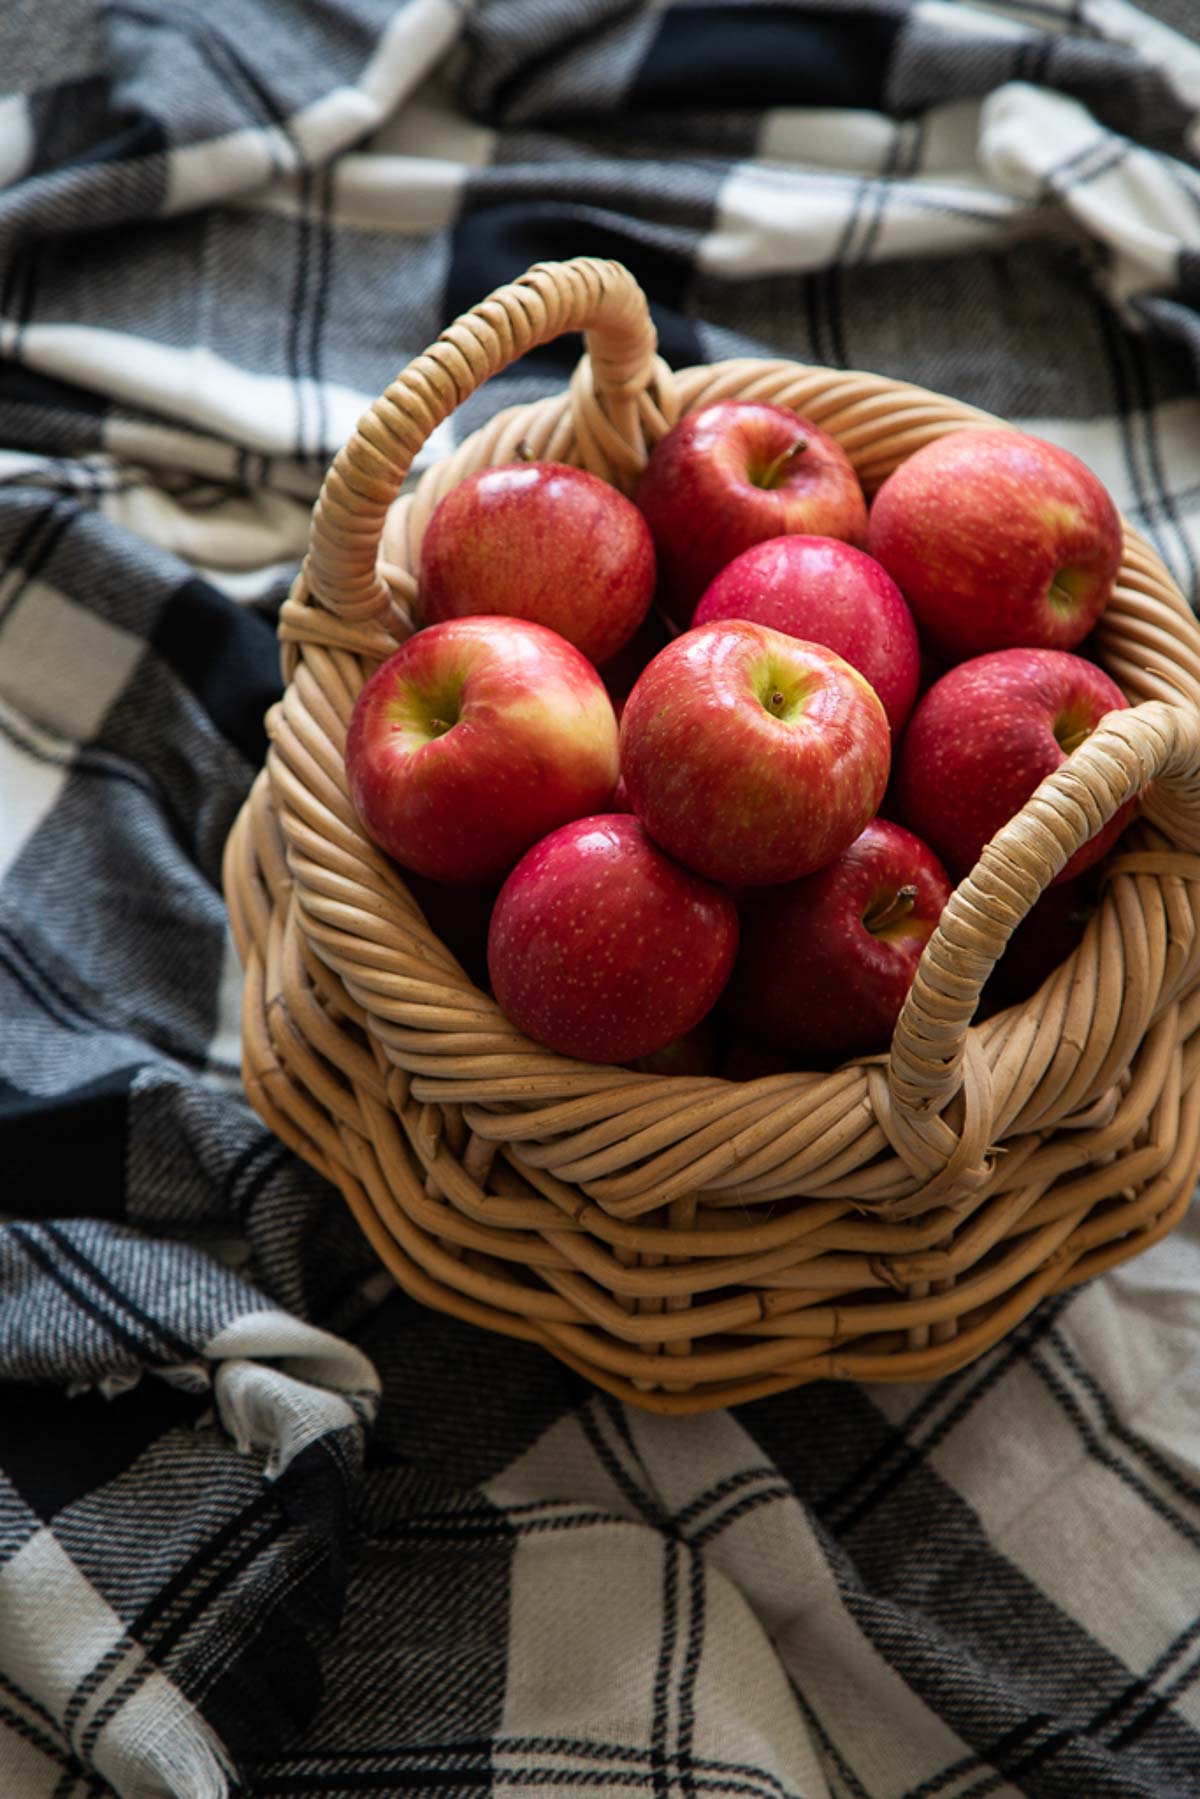 Apples in Basket on Blue Flannel Blanket